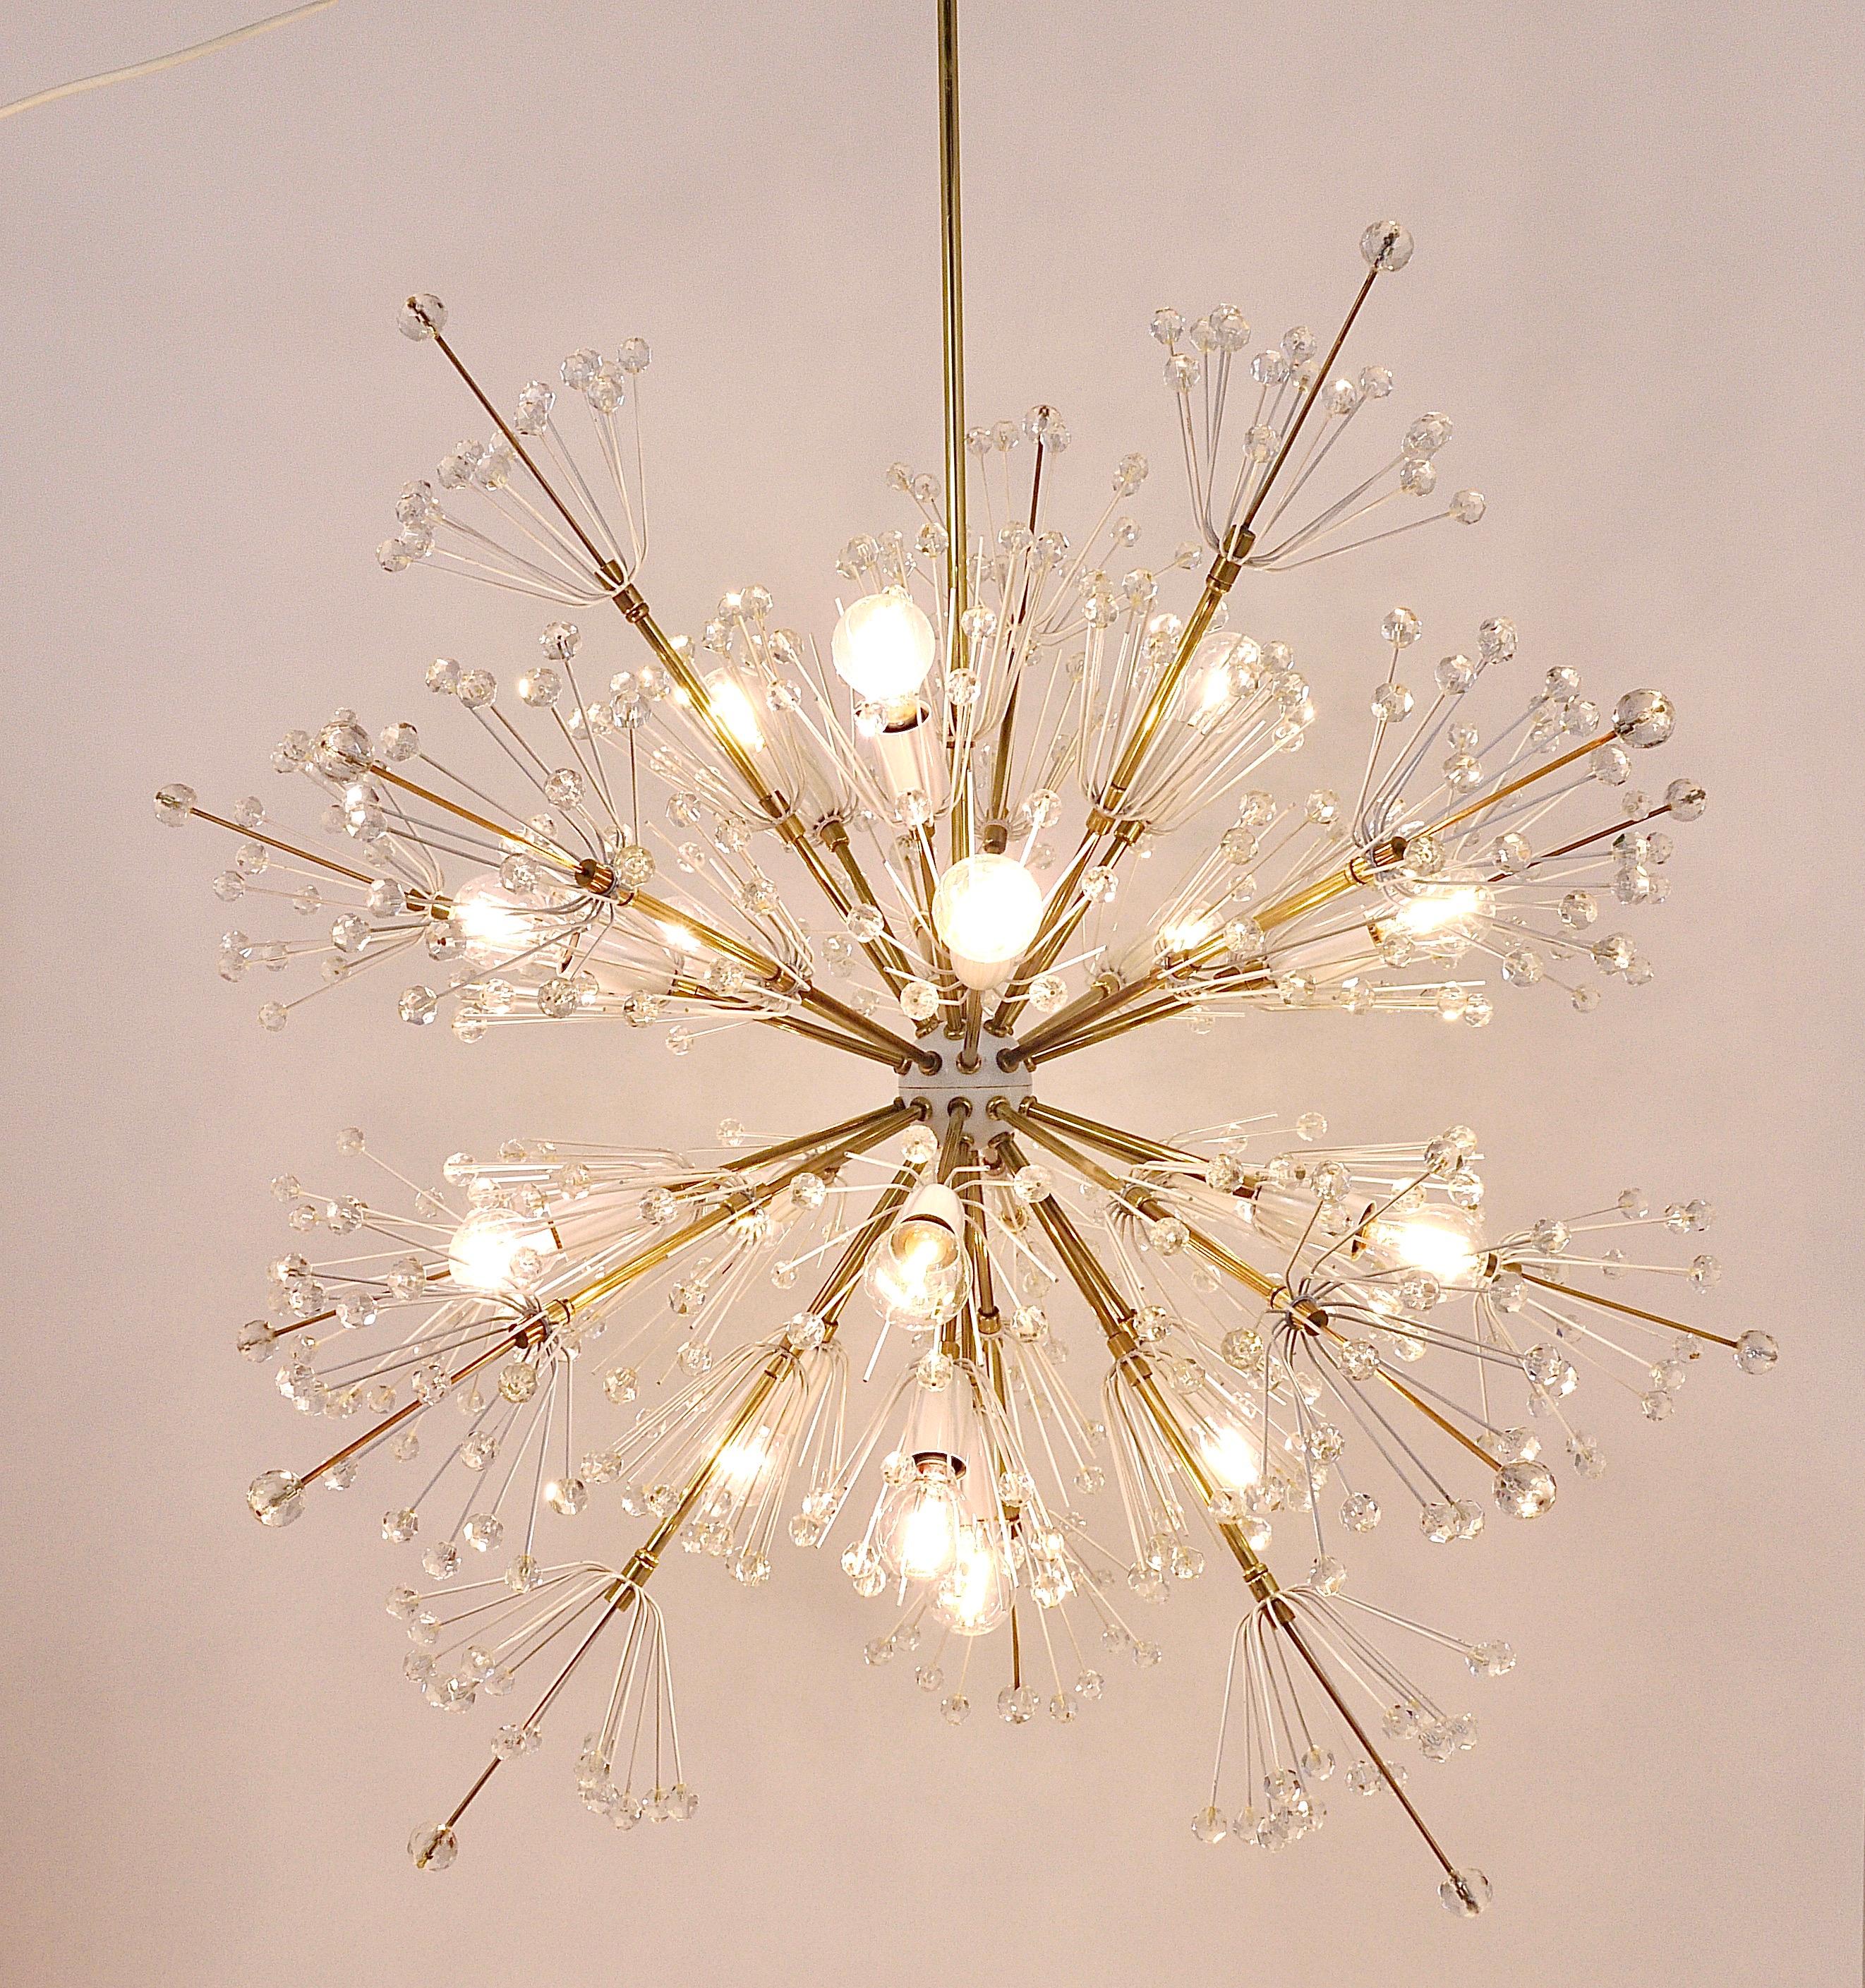 Wir freuen uns, diesen schönen und ungewöhnlichen Midcentury Blowball Snowflake Sputnik-Kronleuchter aus den 1950er Jahren anbieten zu können. Entworfen von Emil Stejnar, ausgeführt von Rupert Nikoll in Wien/Österreich. Der Kronleuchter ist kein